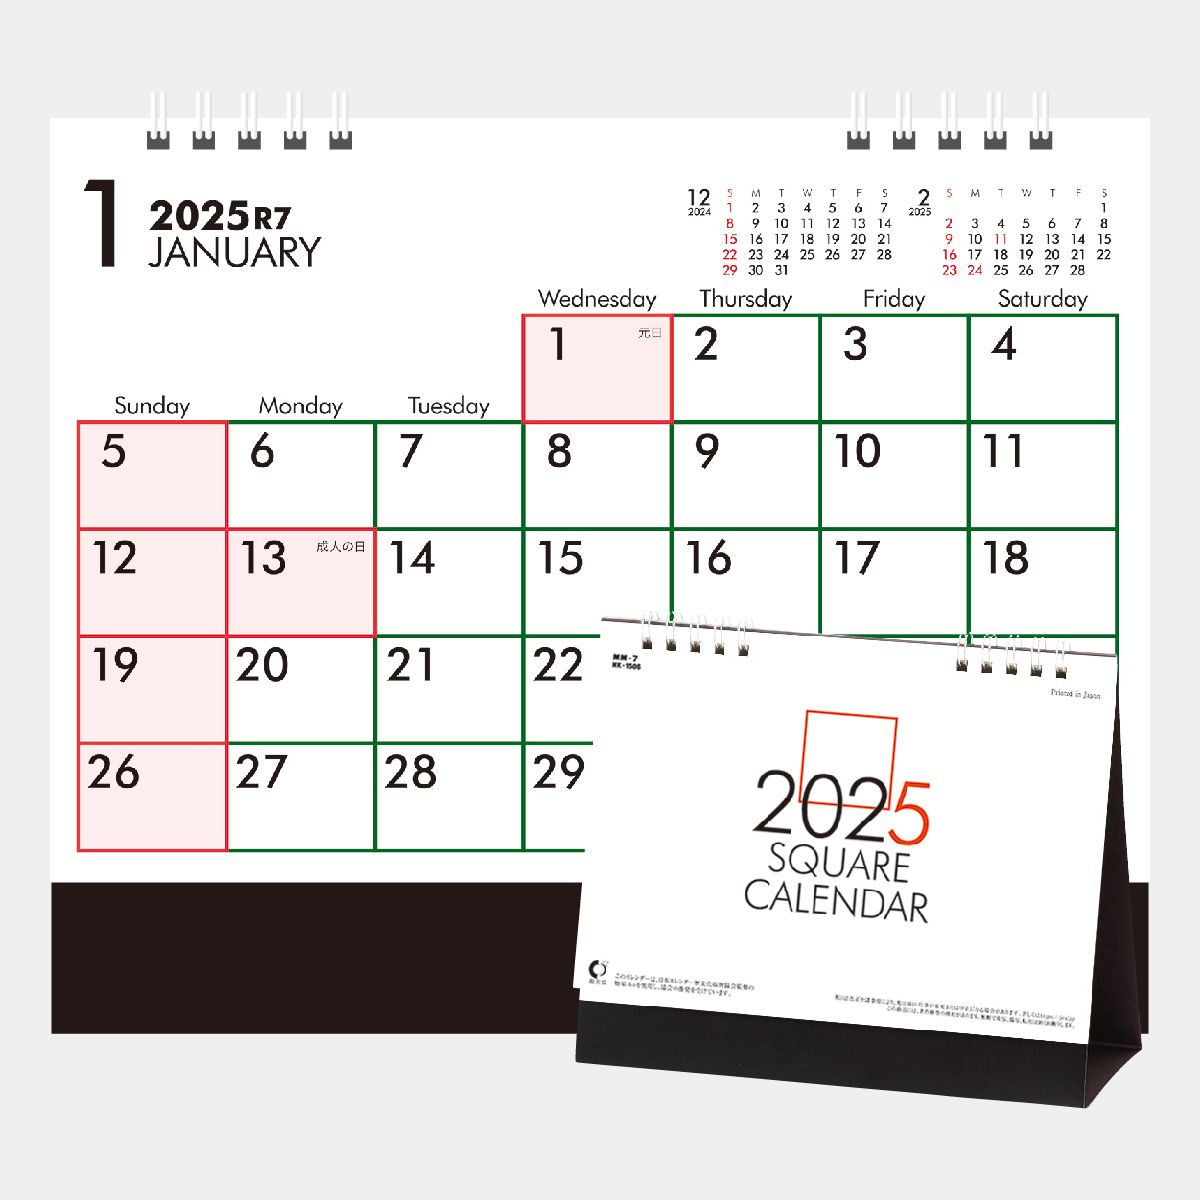 Mm 7 卓上 スクエア文字 六曜無 2020年版名入れカレンダーを格安で